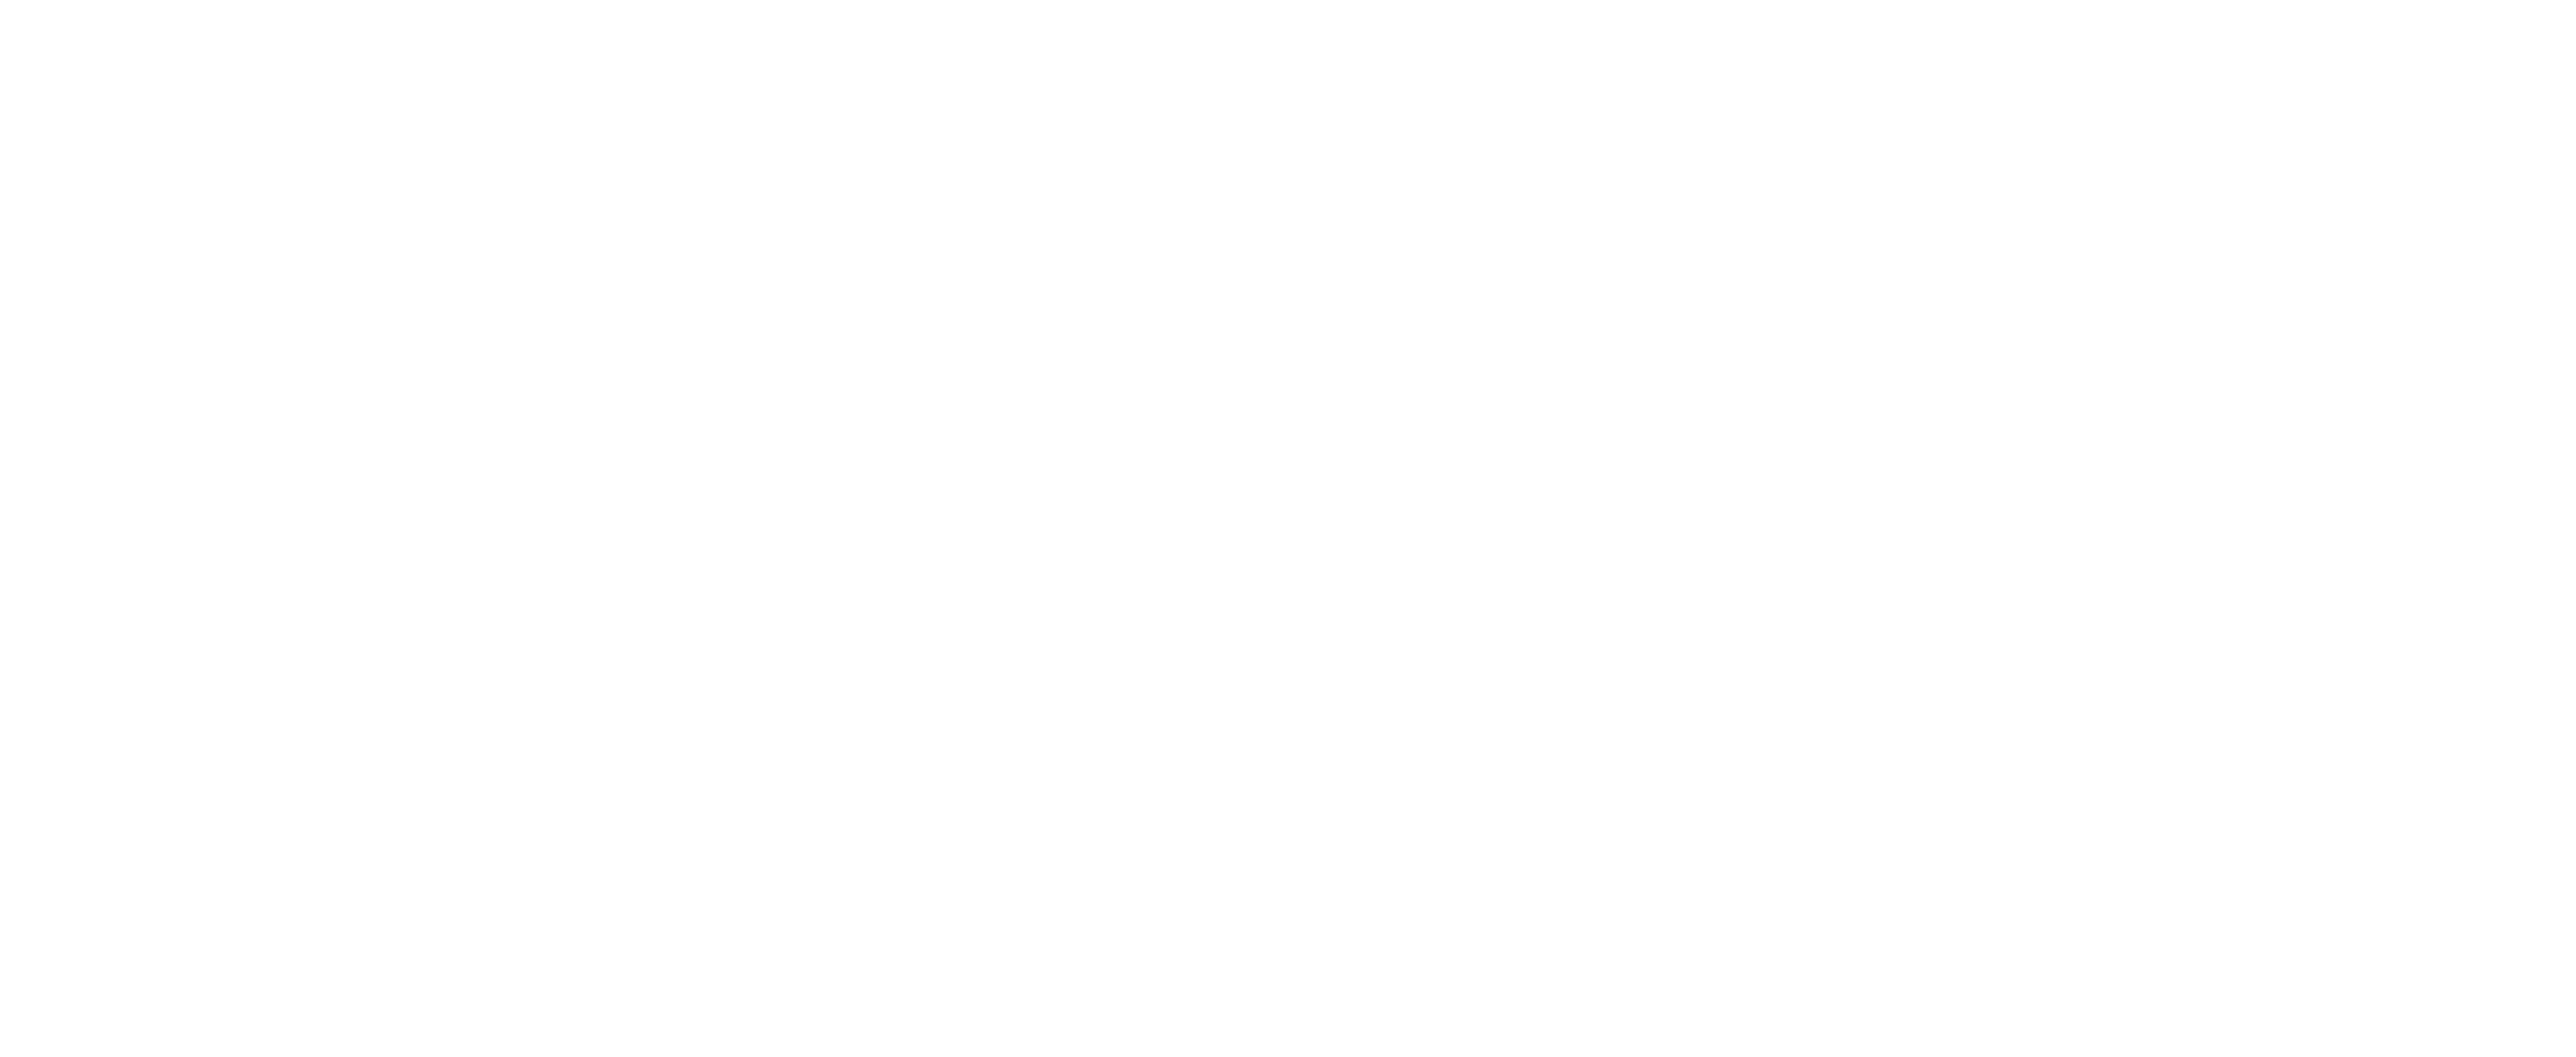 Aberdeen City Music School